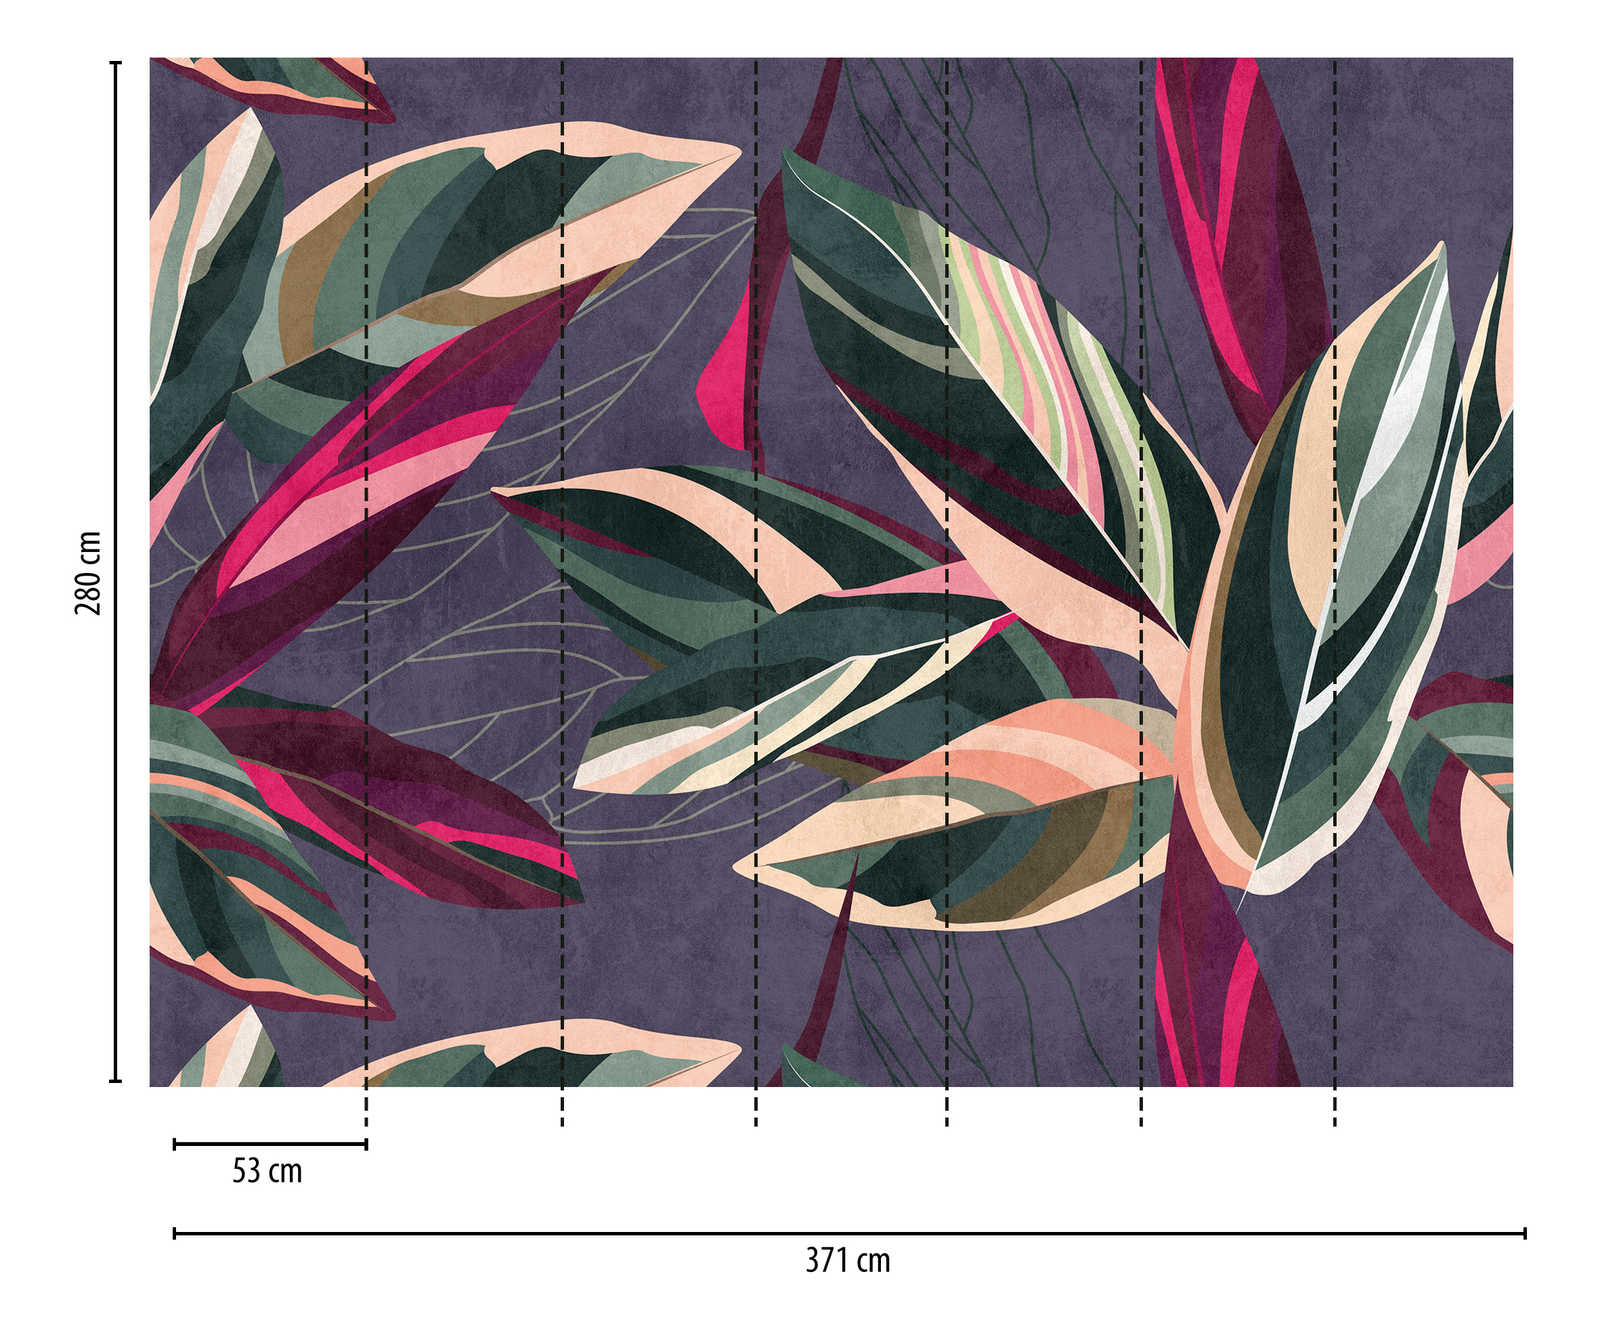             Tapeten-Neuheit – Motivtapete Blätter-Design im Colour Block Stil
        